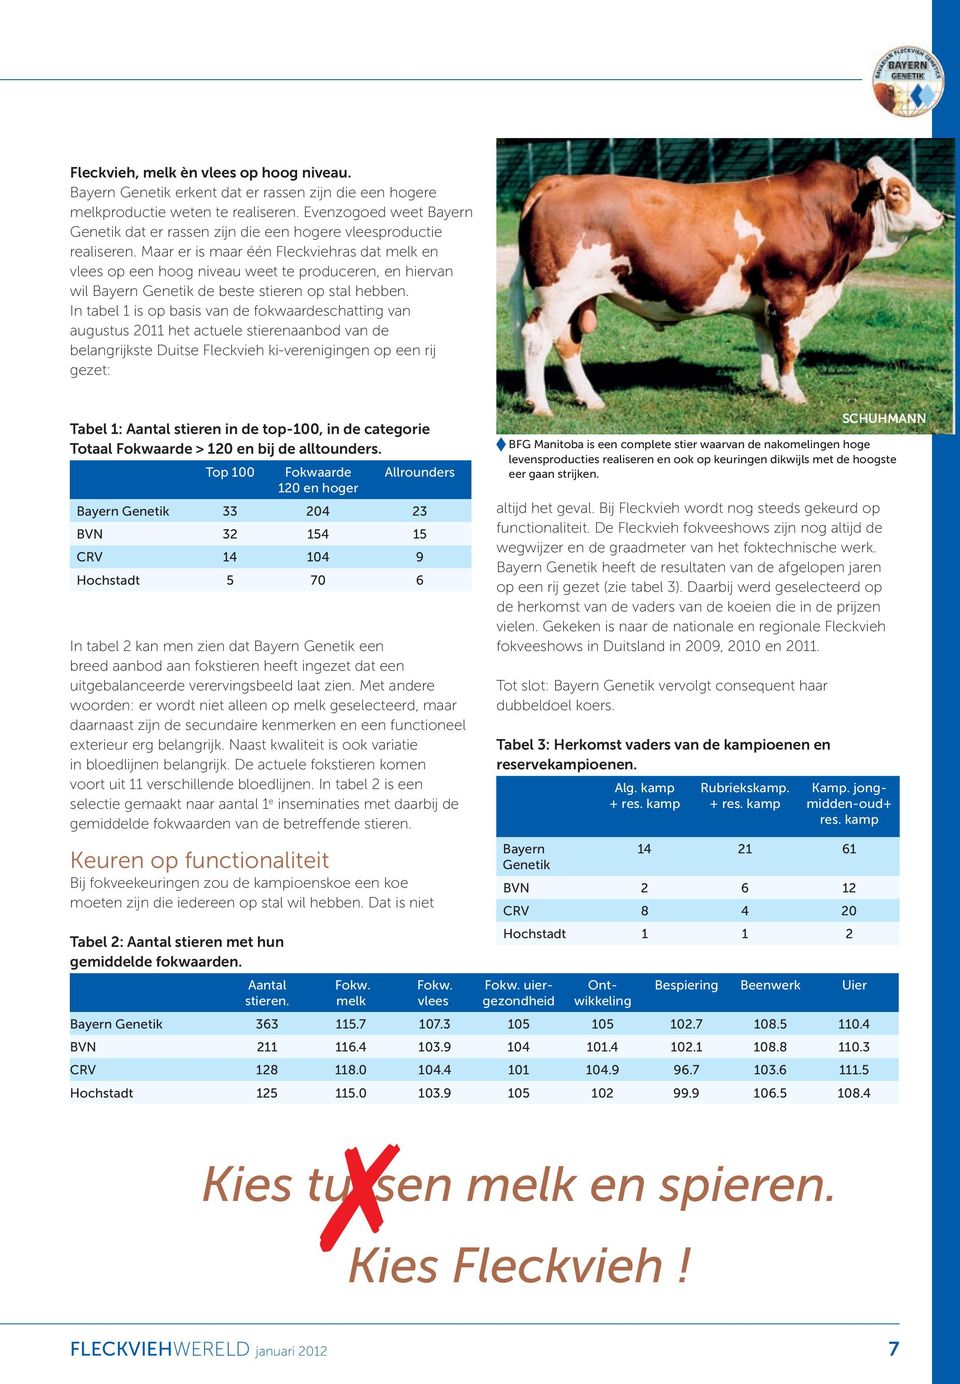 Maar er is maar één Fleckviehras dat melk en vlees op een hoog niveau weet te produceren, en hiervan wil Bayern Genetik de beste stieren op stal hebben.